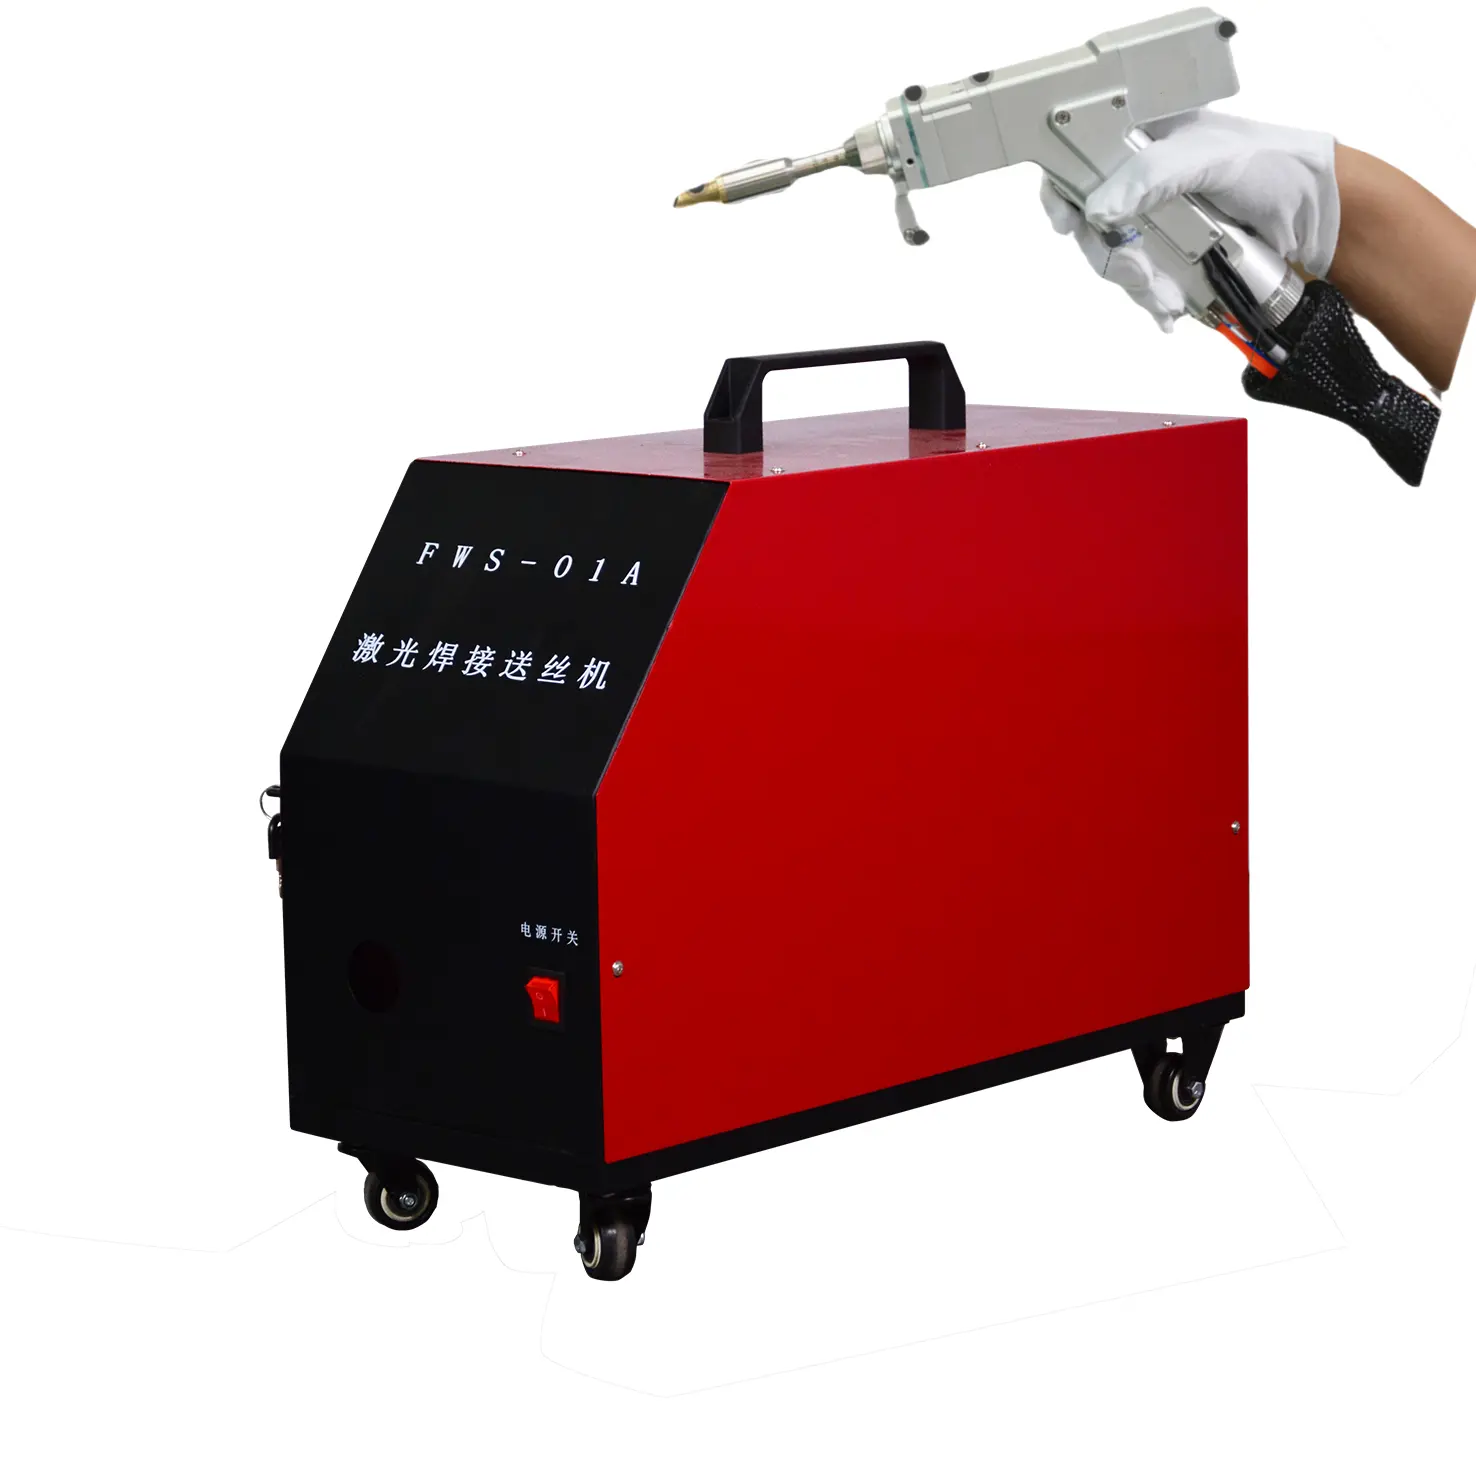 Machine de soudage Laser 3 en 1, 7% de prix, Jiashi, alimentation automatique de fil, métal, acier inoxydable, soudeur laser